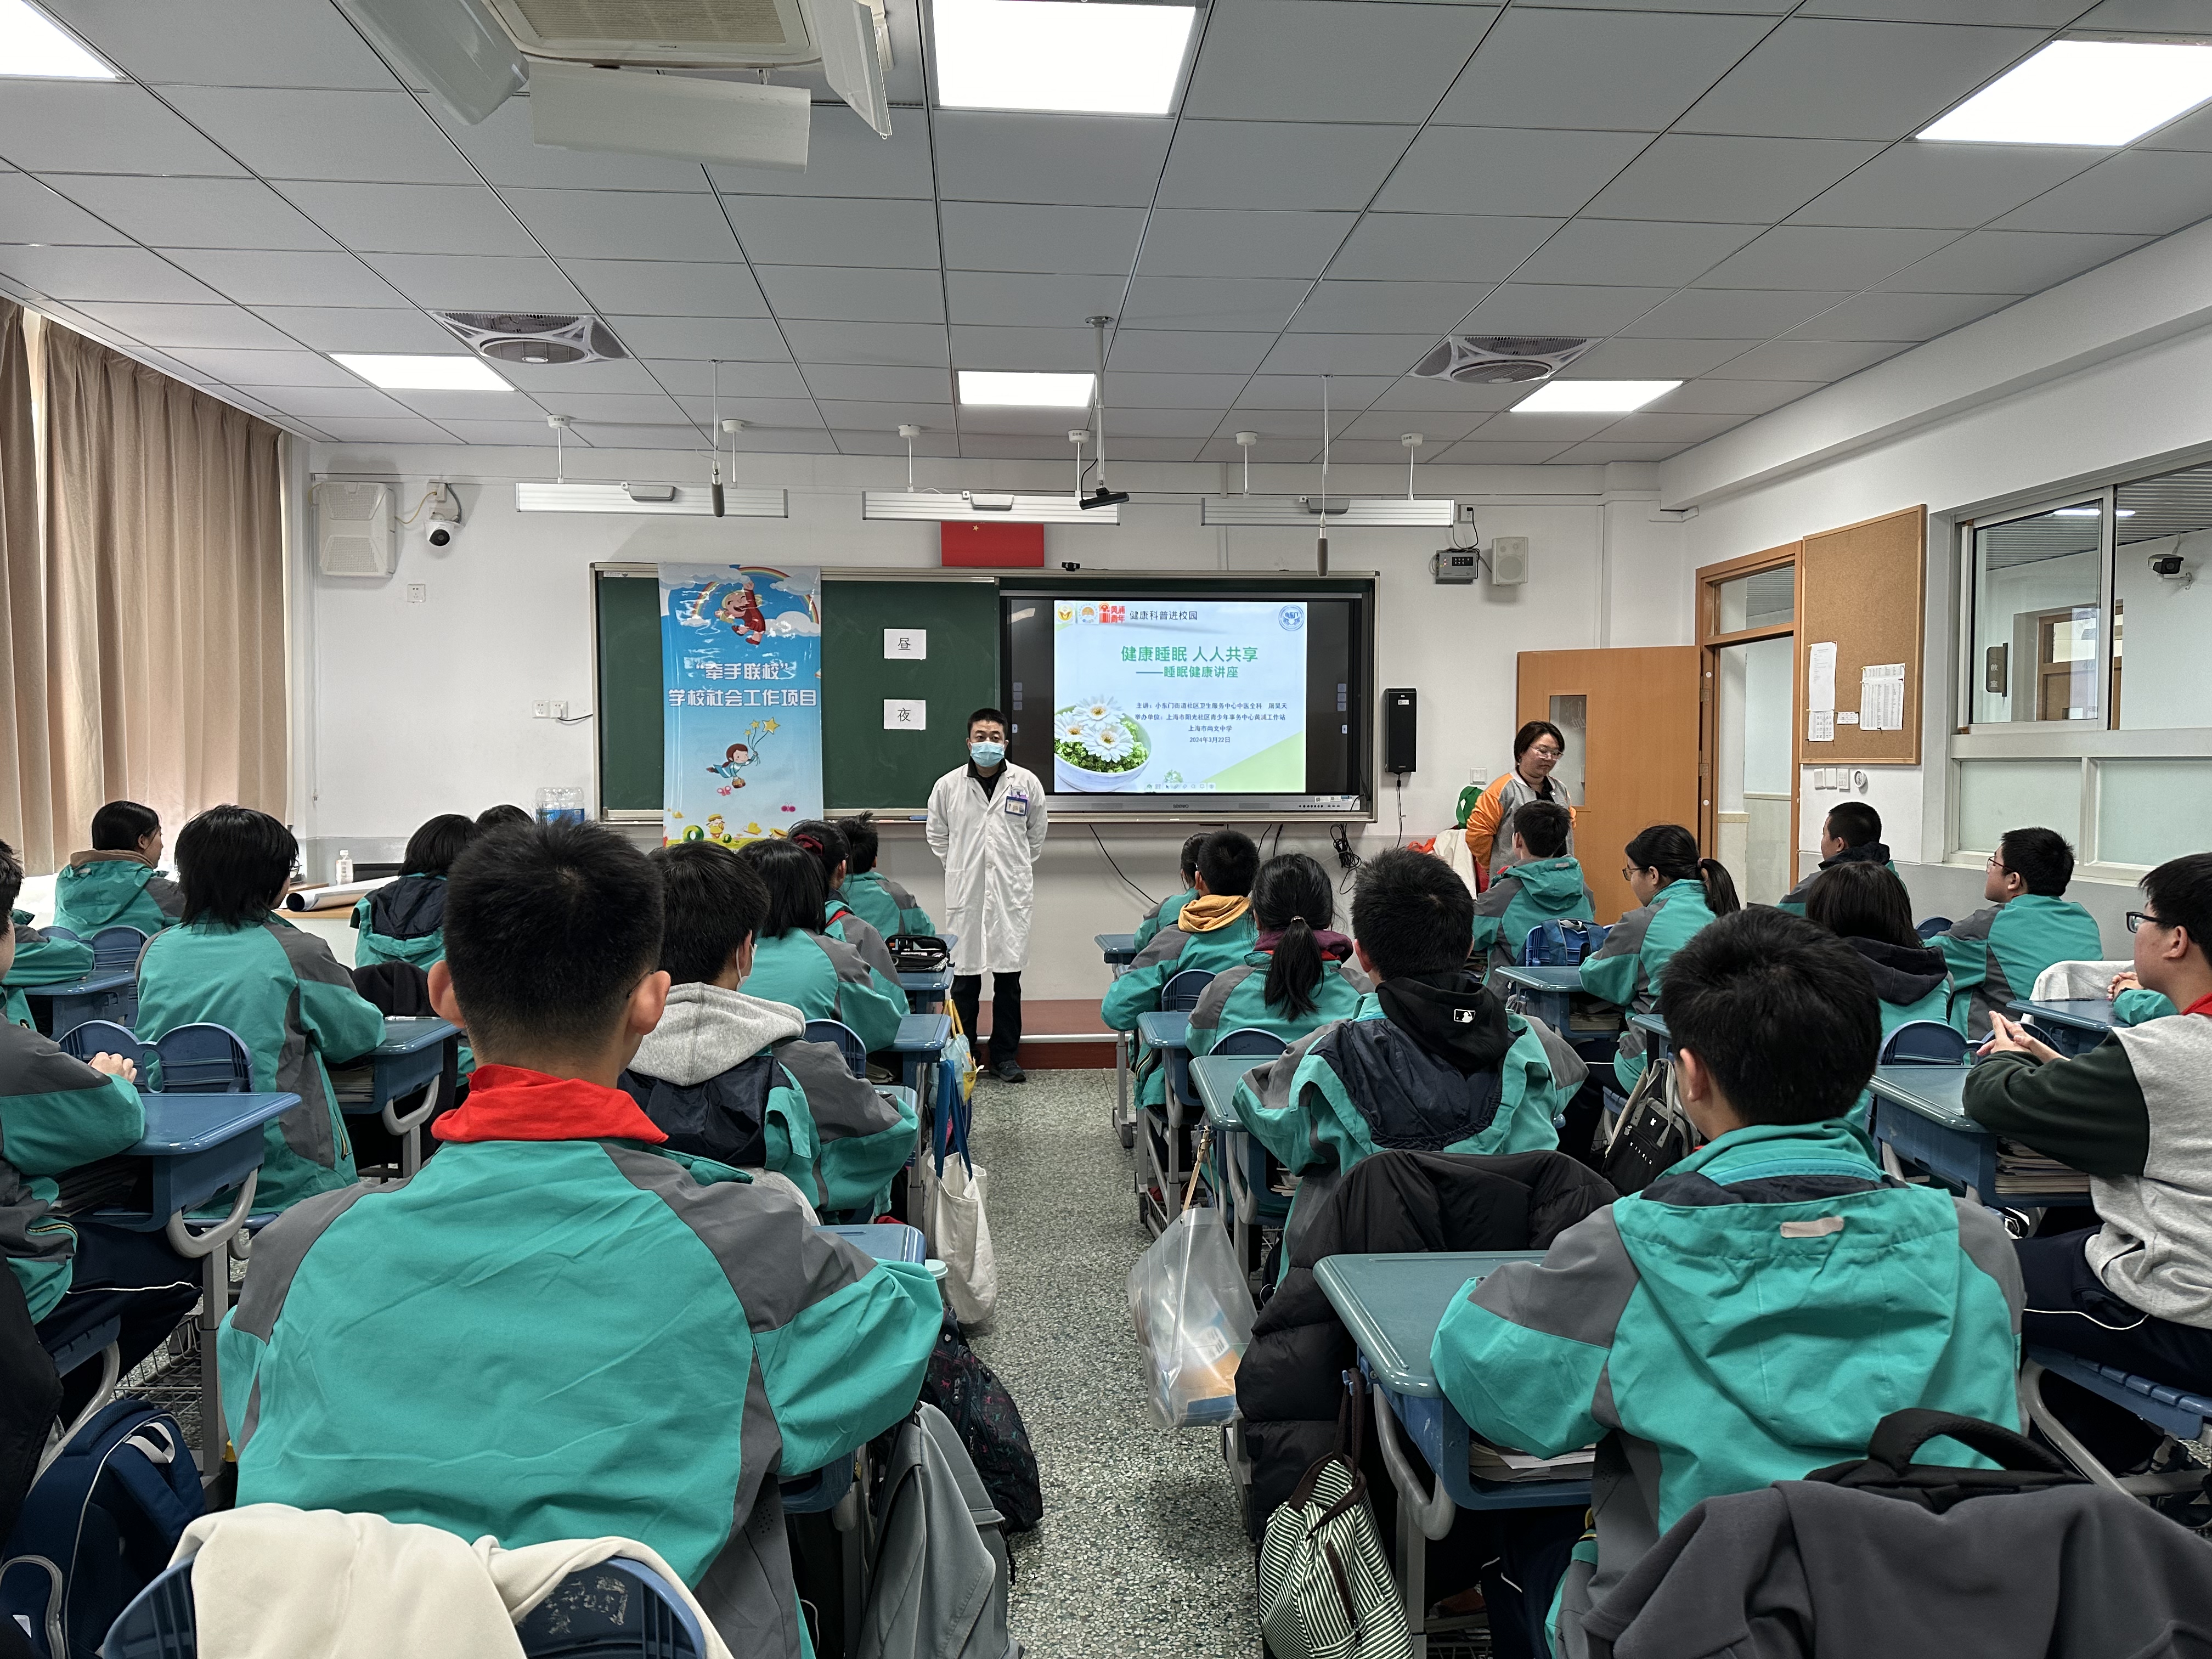 尚文中学举办世界睡眠日健康宣传活动